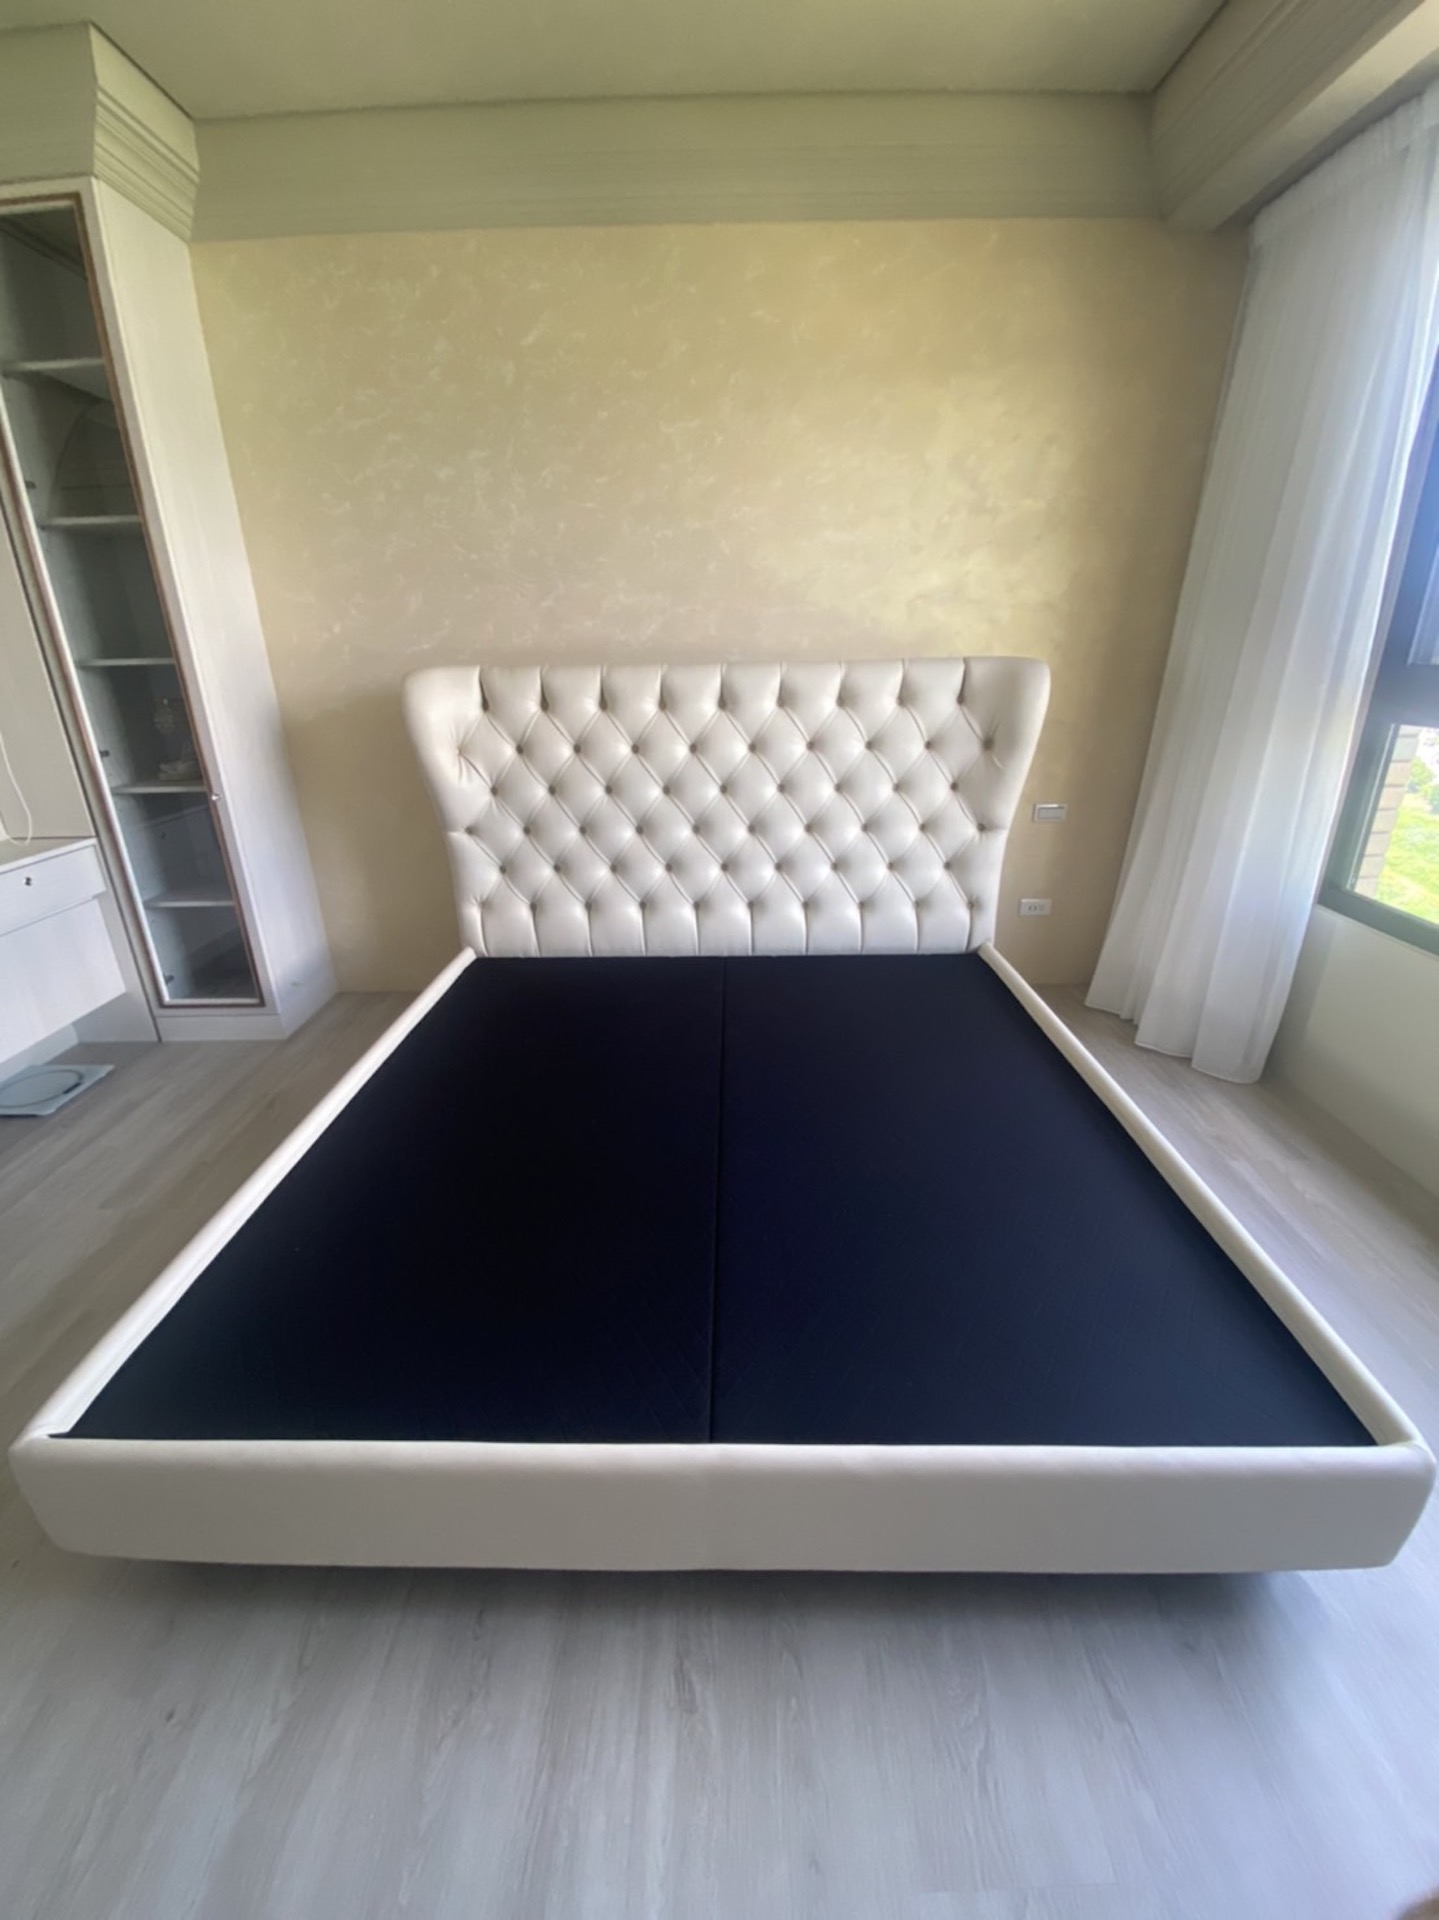 【客戶案例分享】古典拉釦造型床組訂製分享